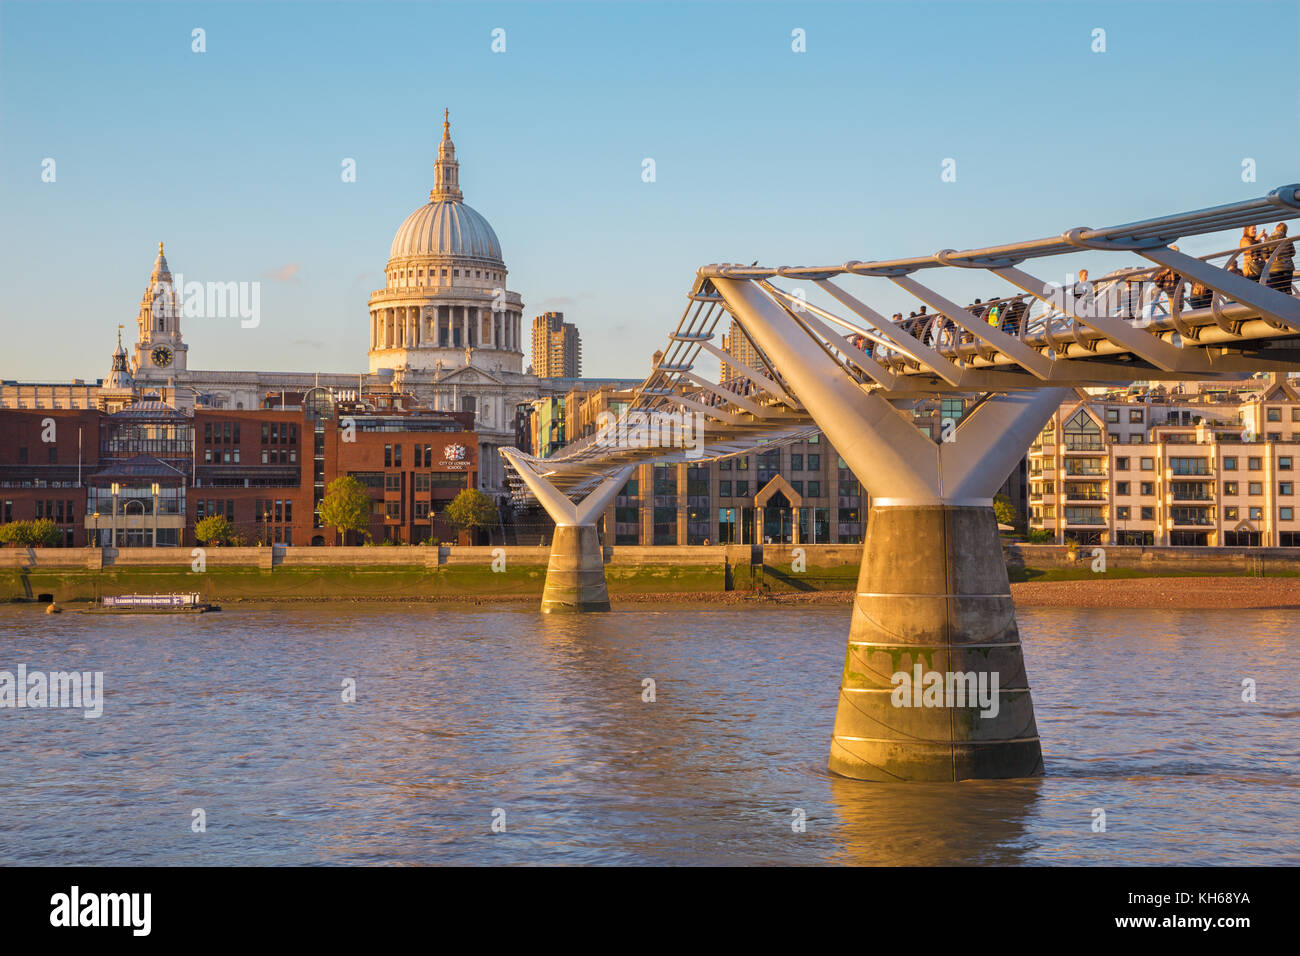 LONDRES, GRAN BRETAÑA - 19 DE SEPTIEMBRE de 2017: El puente del Milenio y la catedral de San Pablo en la luz de la noche. Foto de stock